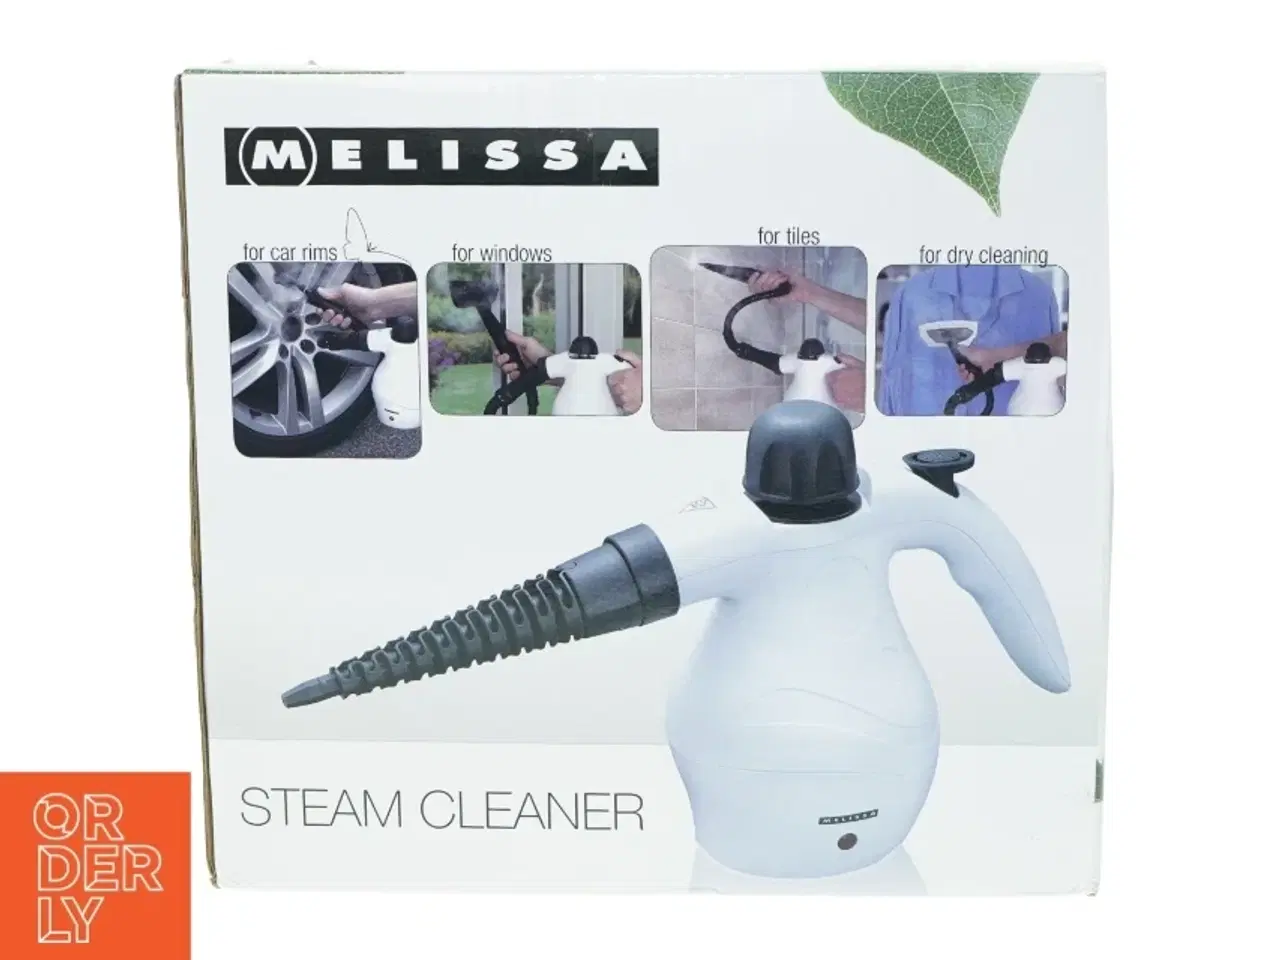 Billede 1 - Steam cleaner fra Melissa (str. 25 x 14 x 23 cm)